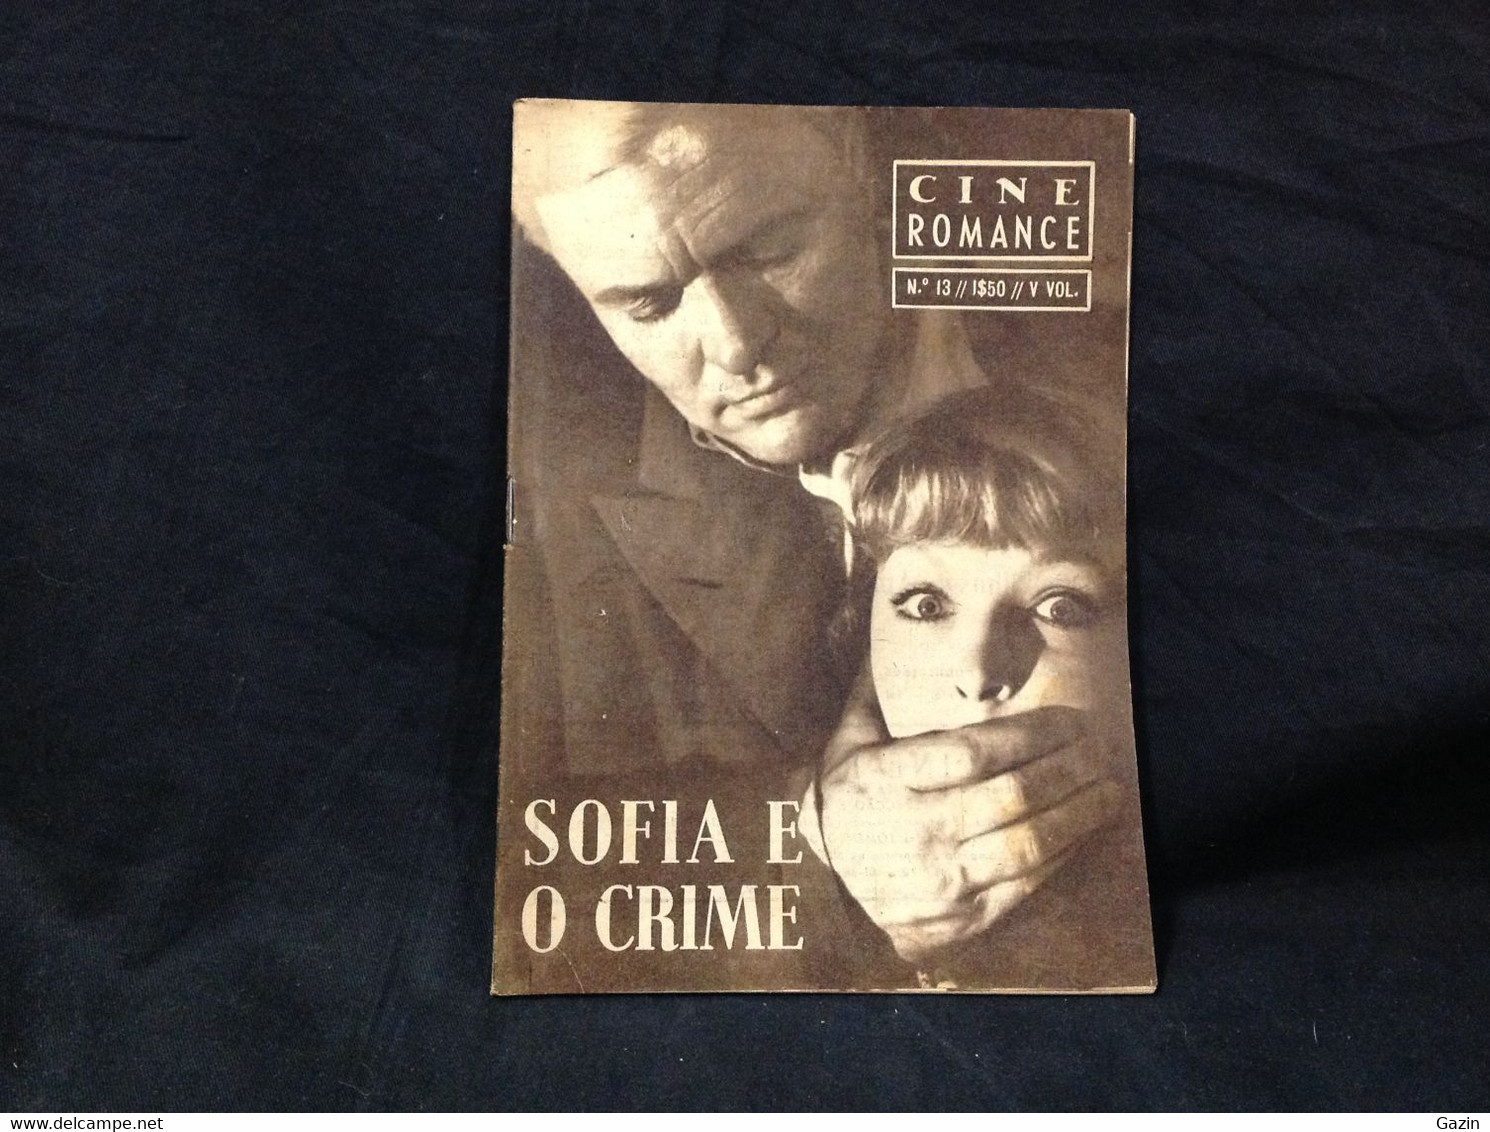 C2/23 - Sofia E O Crime - Marina Vlady * Peter Janeick -  Portugal Mag - Cine Romance -1956 - Eugénio Salvador - Cinéma & Télévision